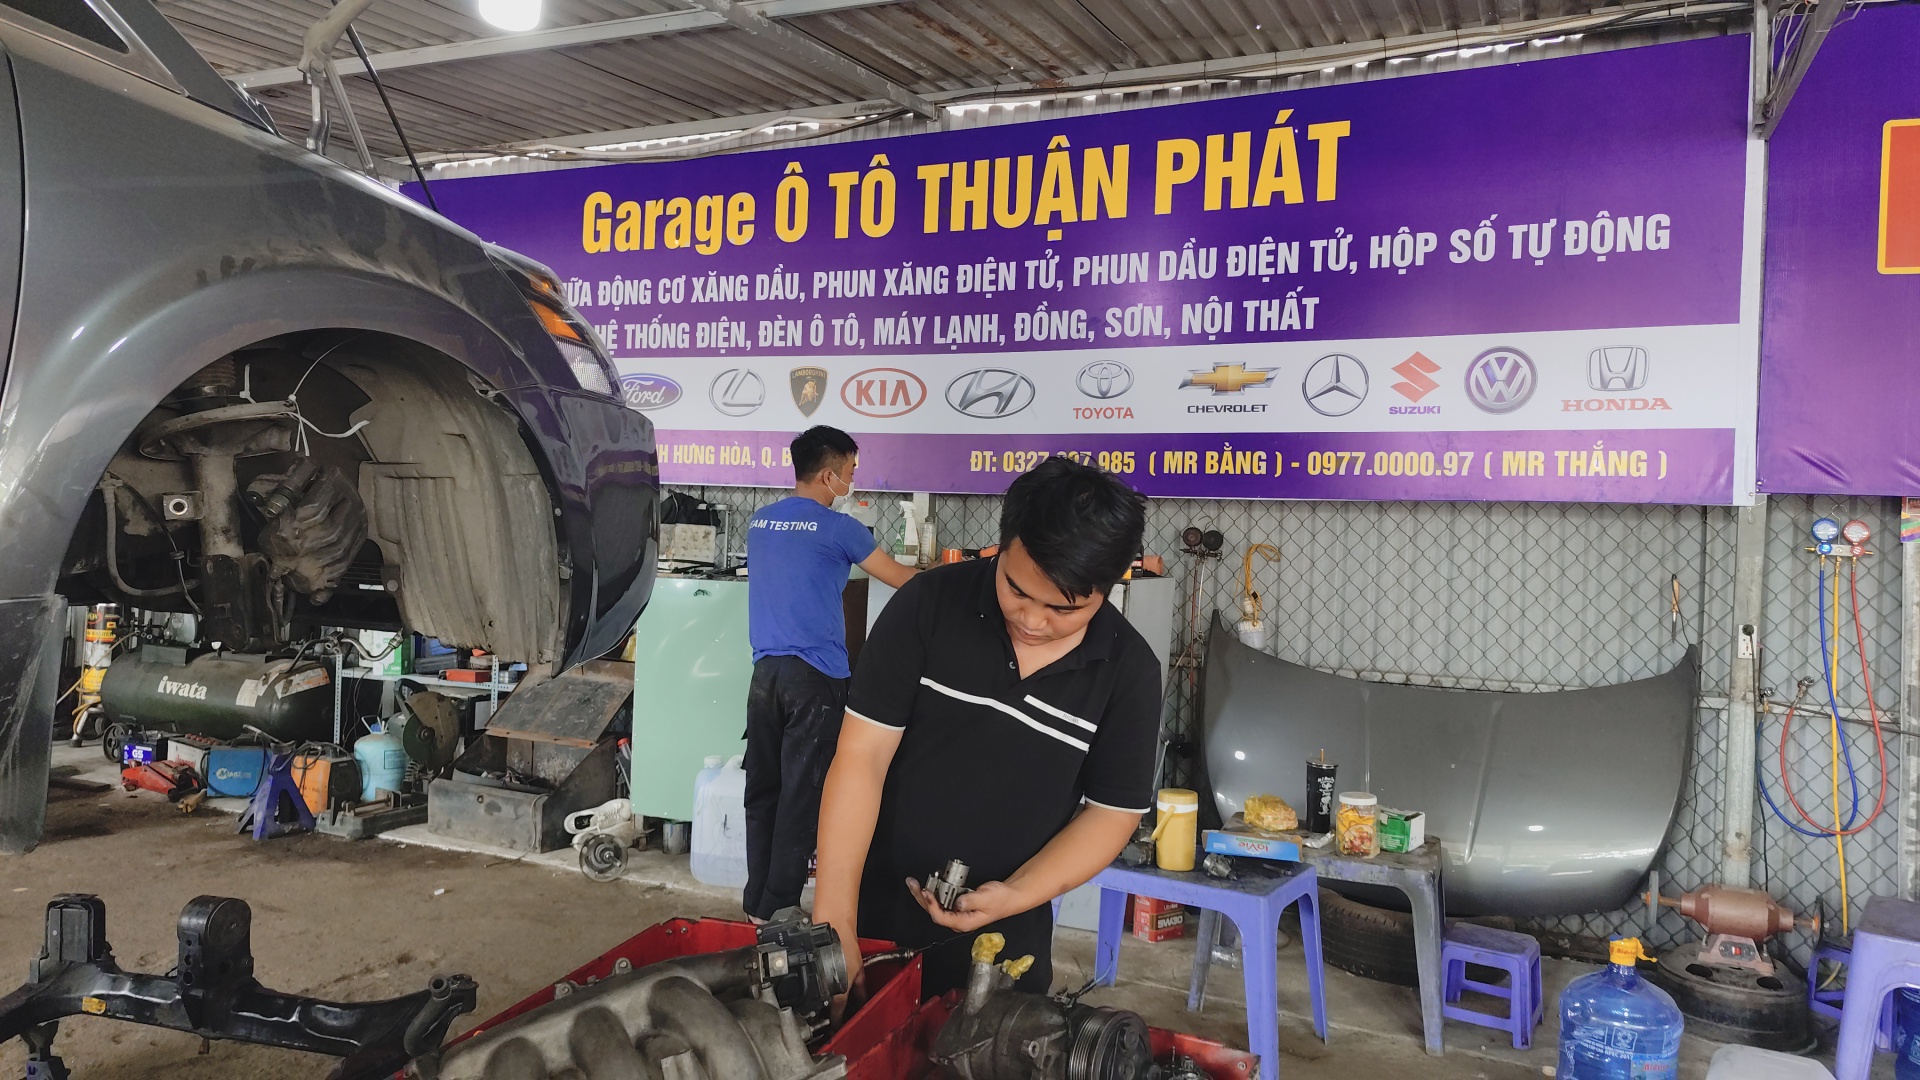 TP HCM: Gara ô tô Thuận Phát - Uy tín, Chất lượng, Giá tốt: Giải pháp hoàn hảo cho xế yêu của bạn tại Bình Tân!